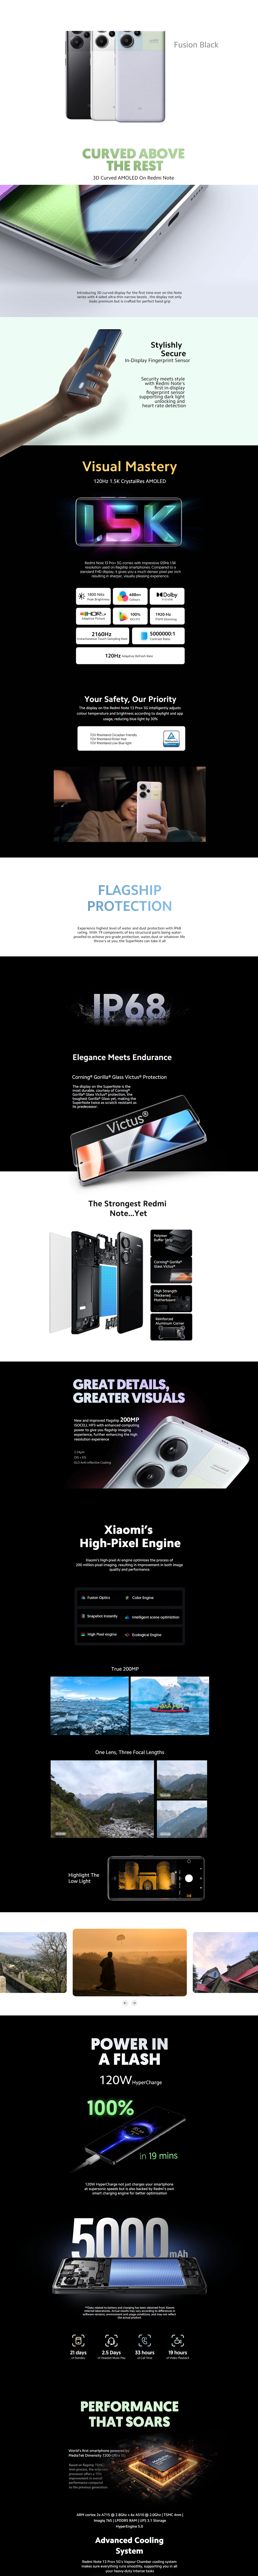 REDMI Note 13 Pro+ 5G ( 256 GB Storage, 8 GB RAM ) Online at Best Price On